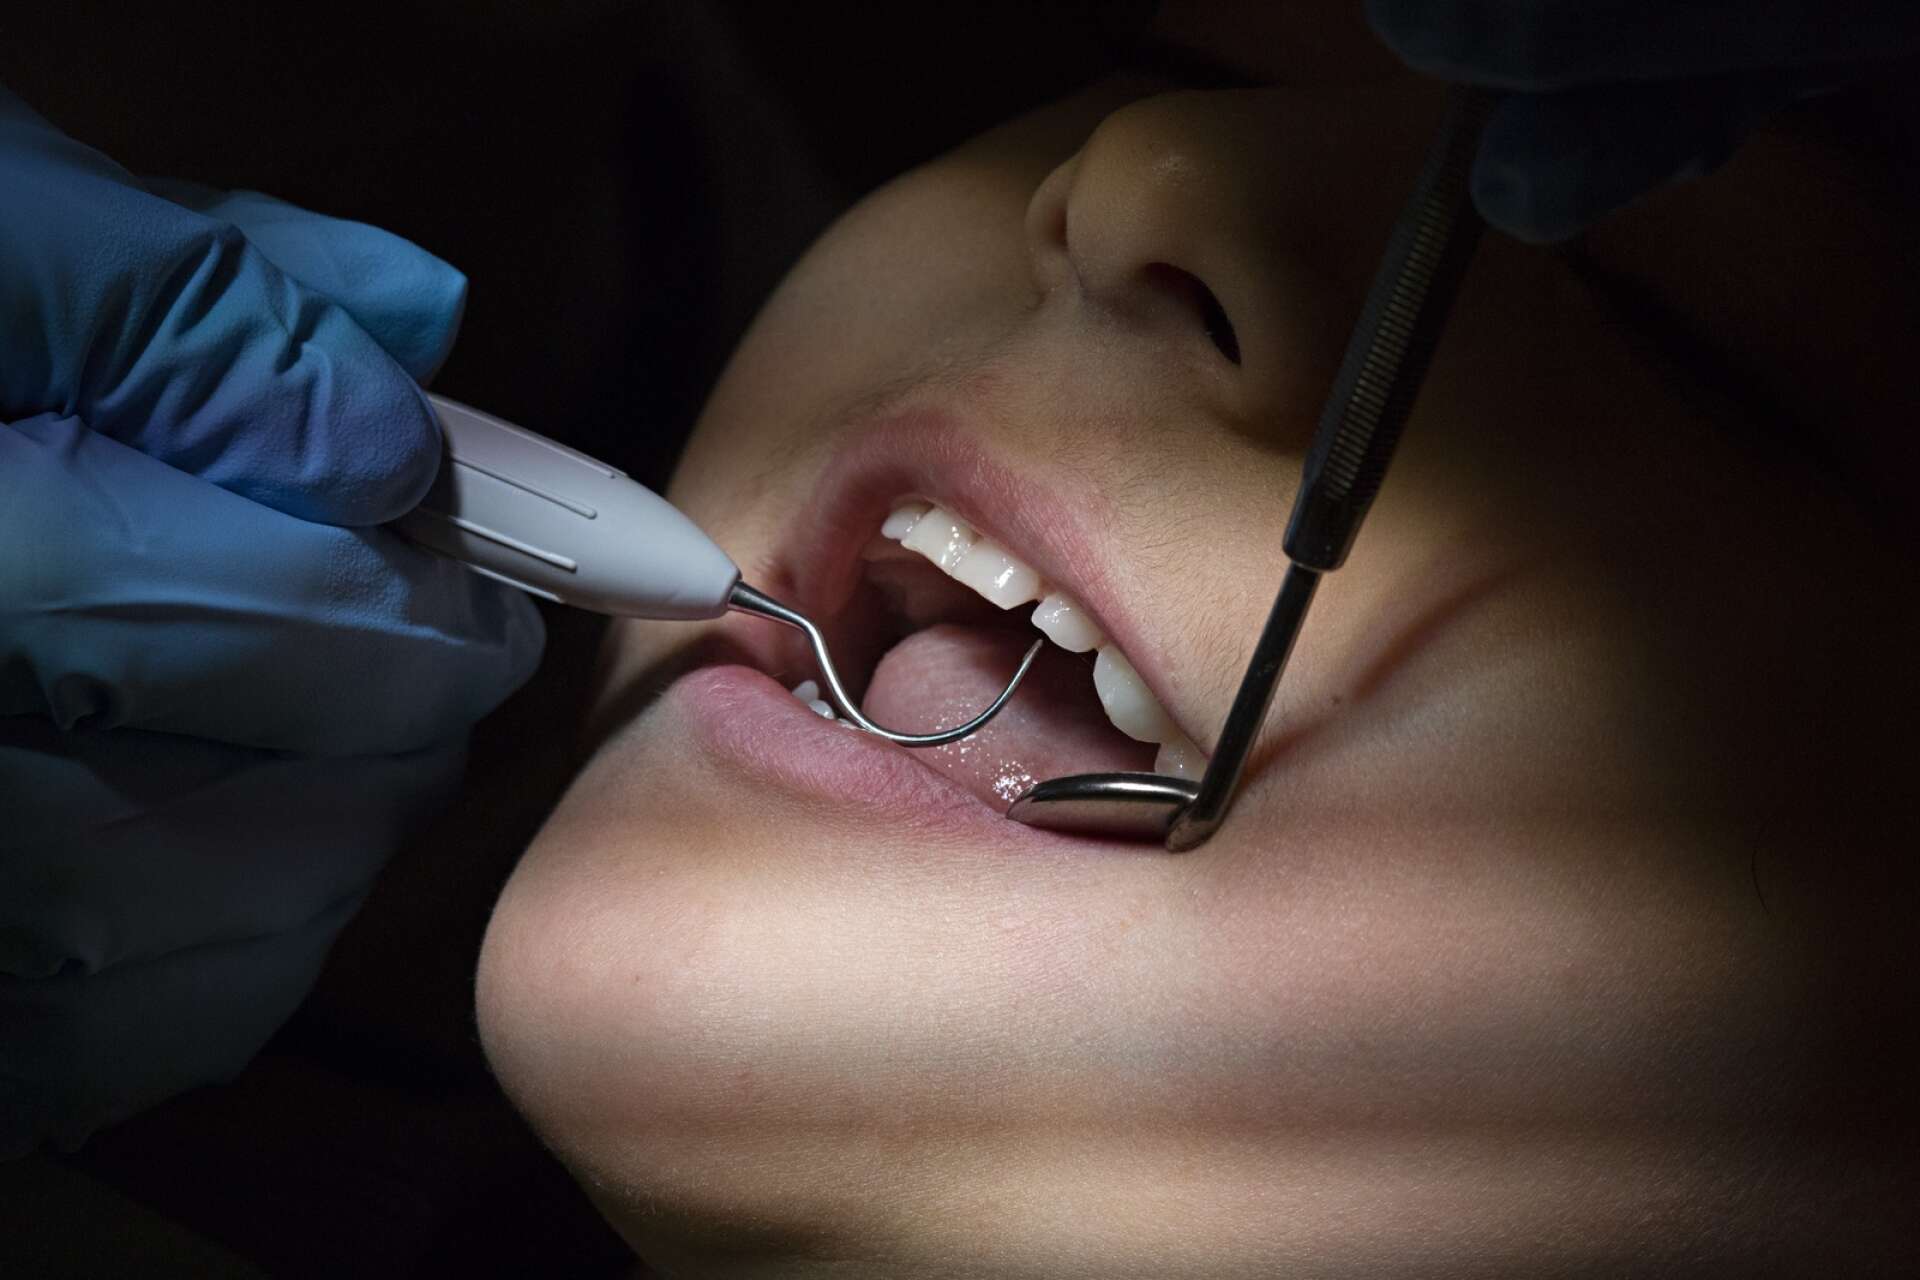 Värmländska barns tandhälsa har gått från bäst till sämst i landet – åtminstone vad gäller den tredjedel som har mest problem med sina tänder.